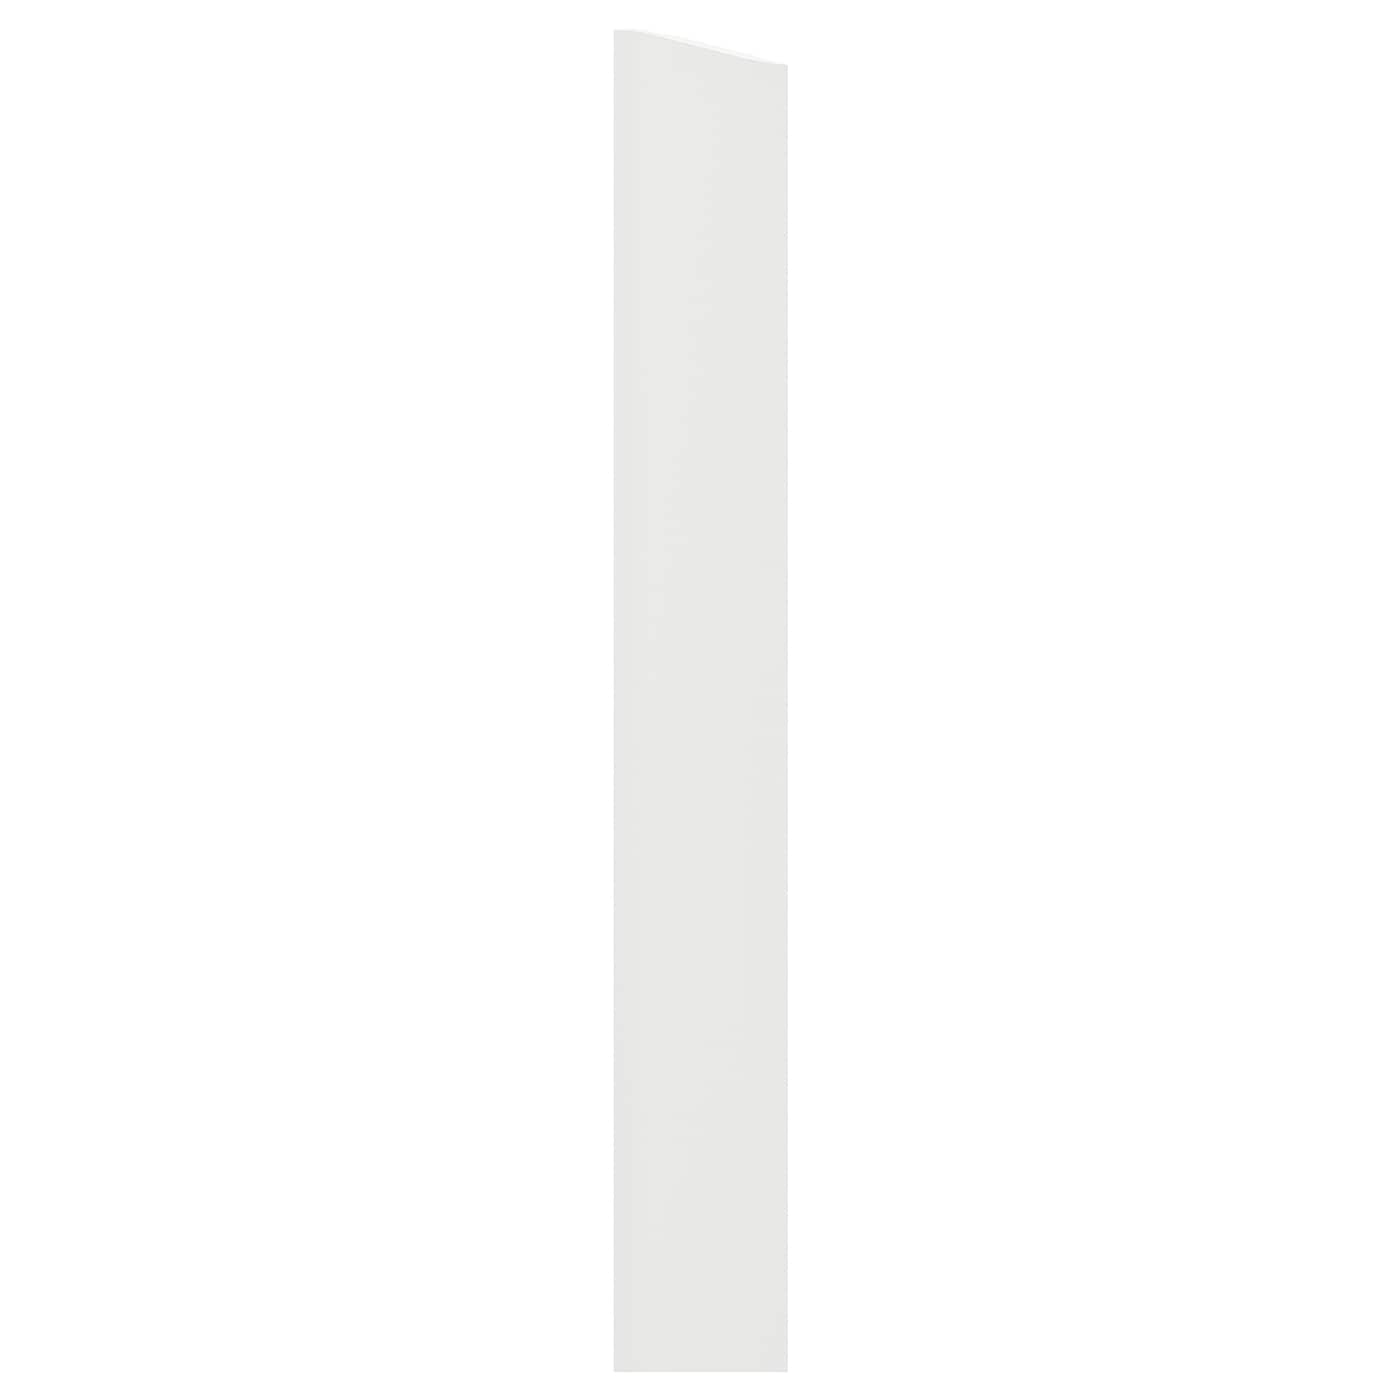 Защитная планка - METOD  IKEA/ МЕТОД ИКЕА, 220 см, белый